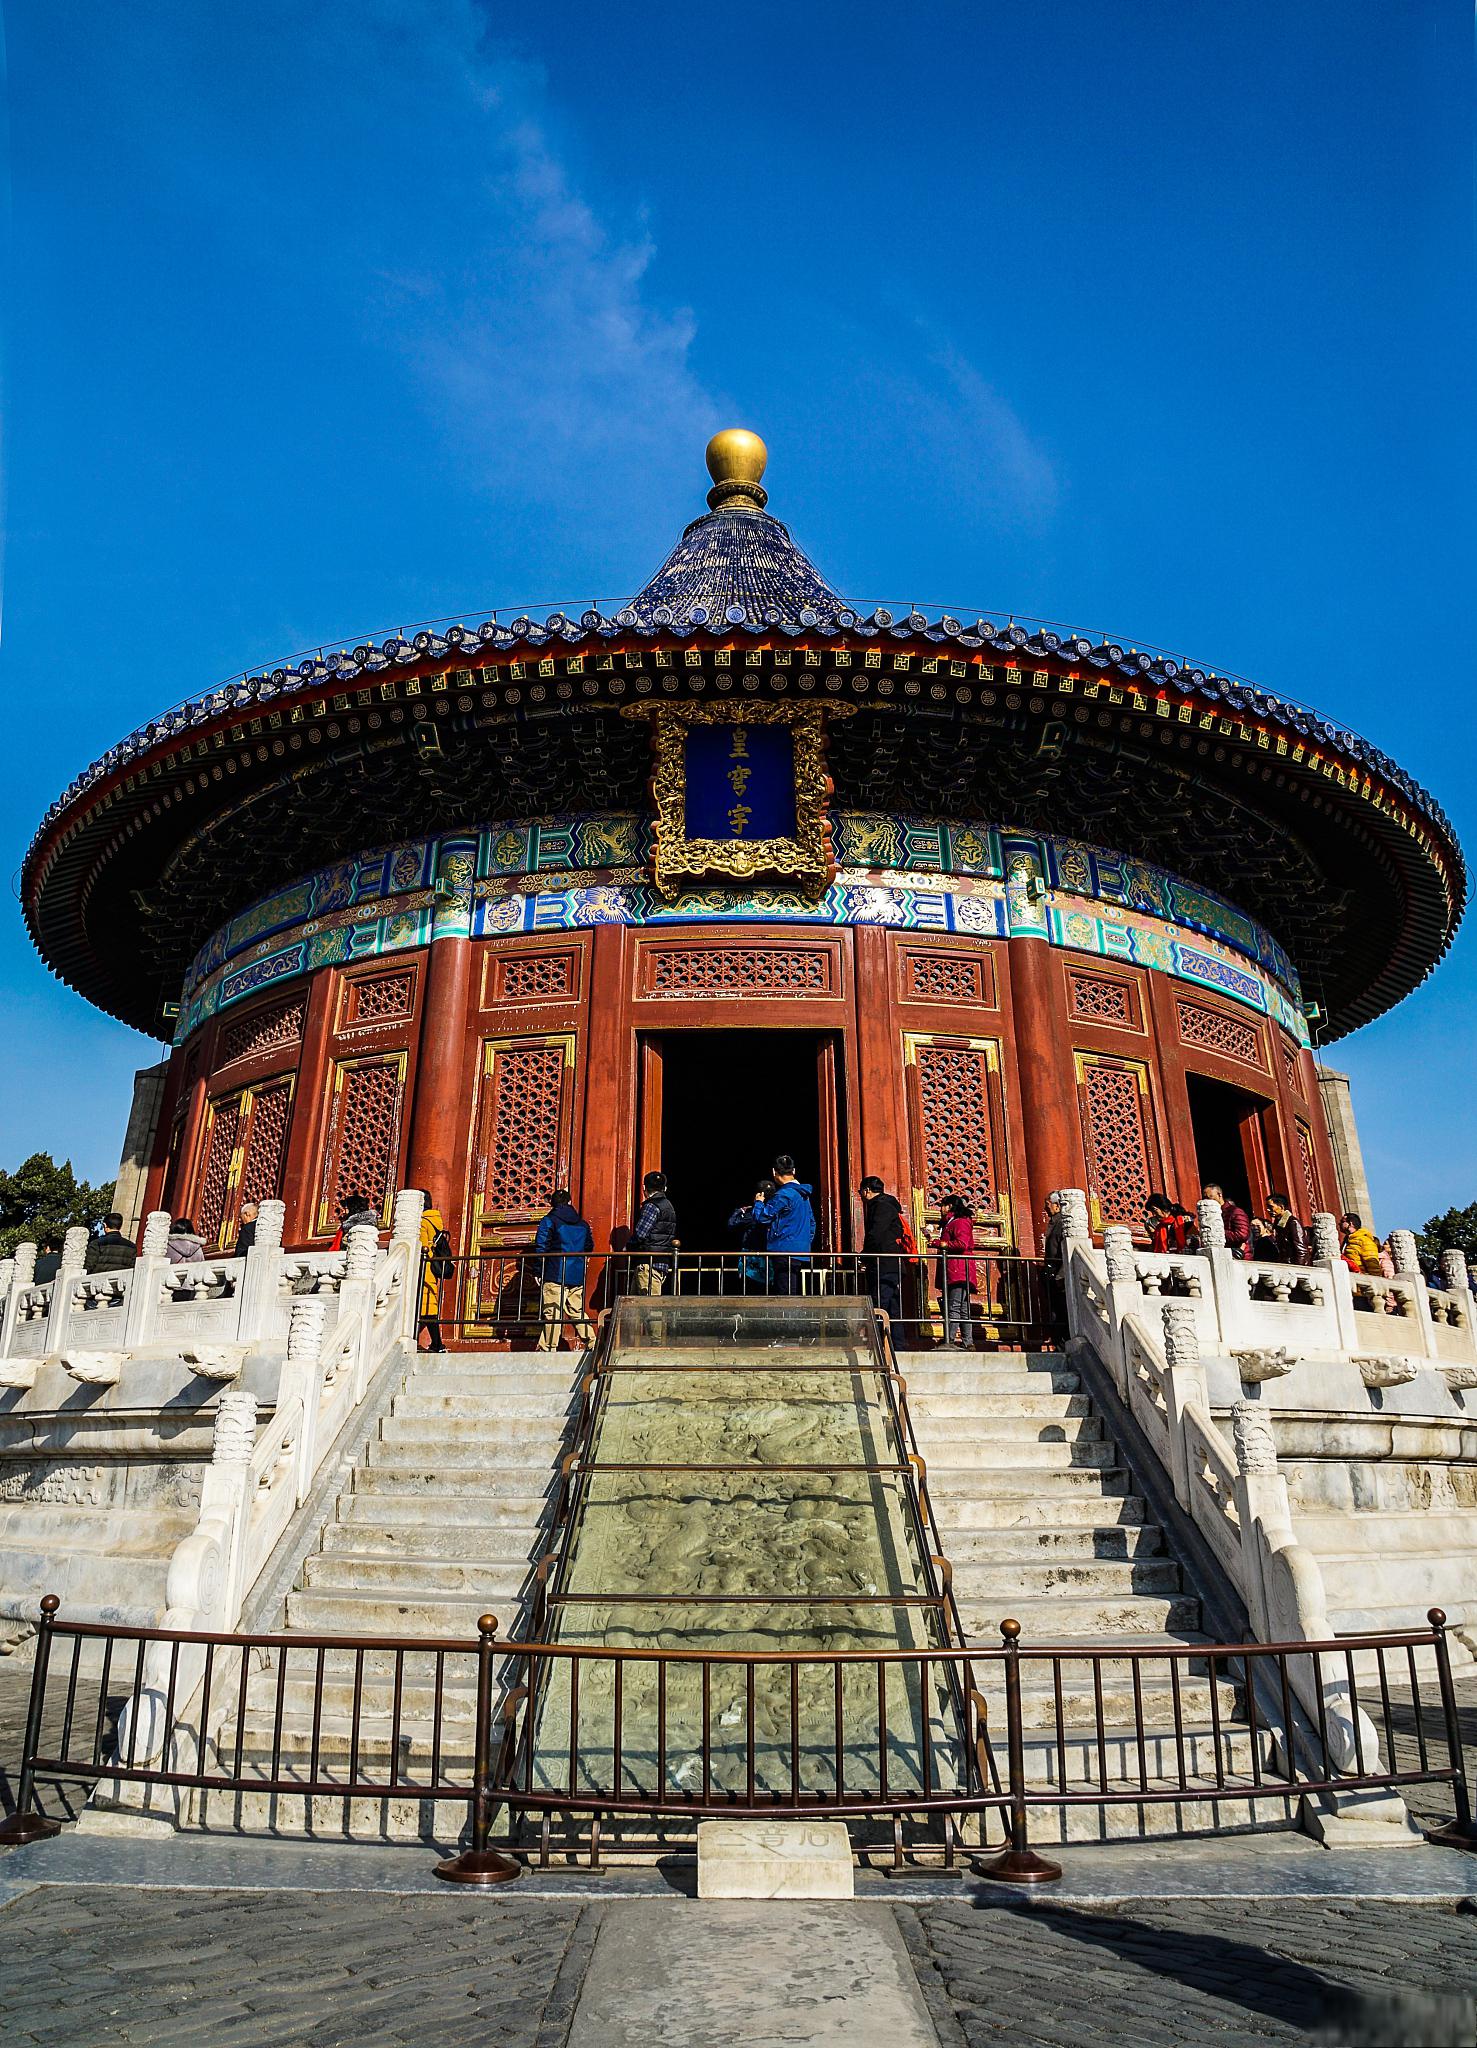 天坛公园,一座充满历史和文化气息的公园 天坛公园,位于中国北京市